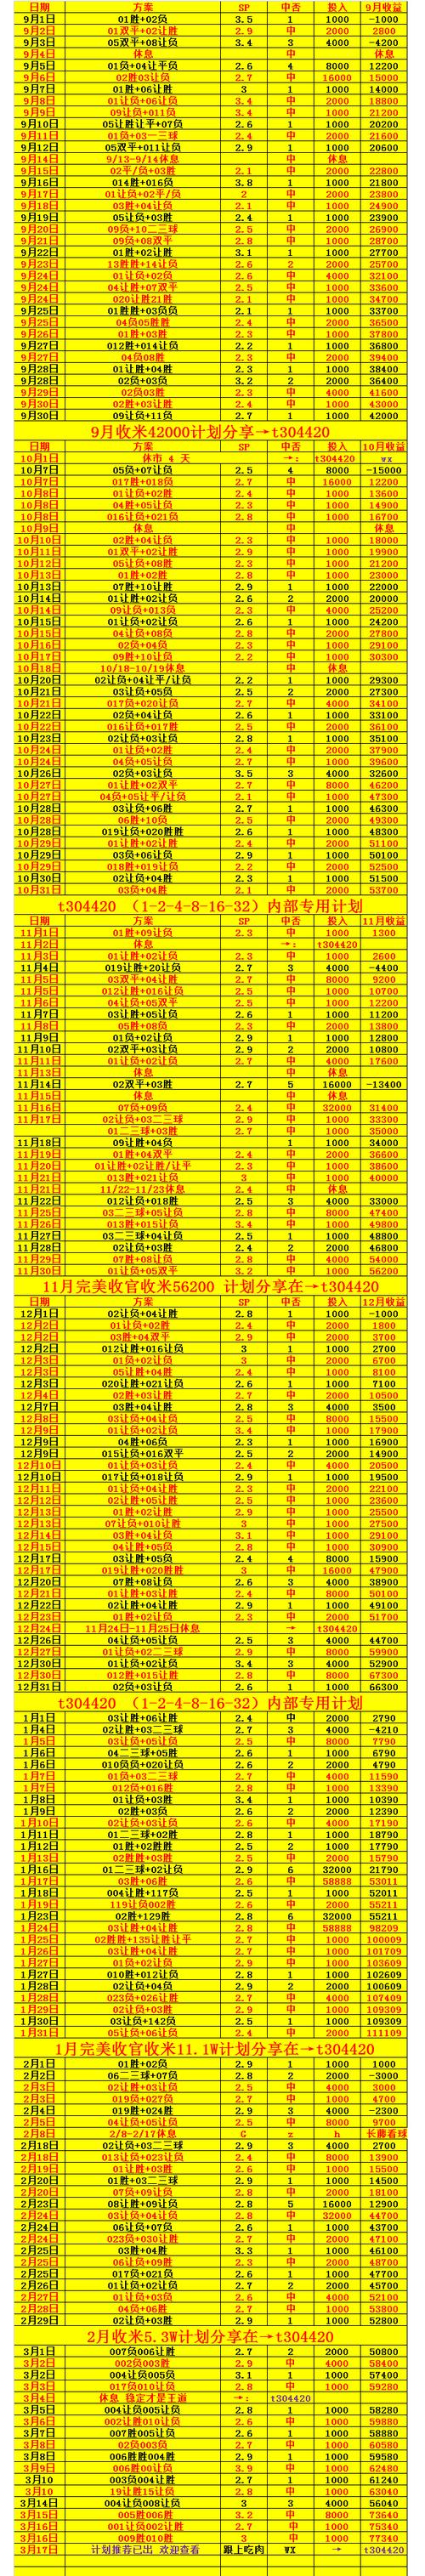 足球世预赛最新赛程直播_足球世预赛中国队赛程时间表